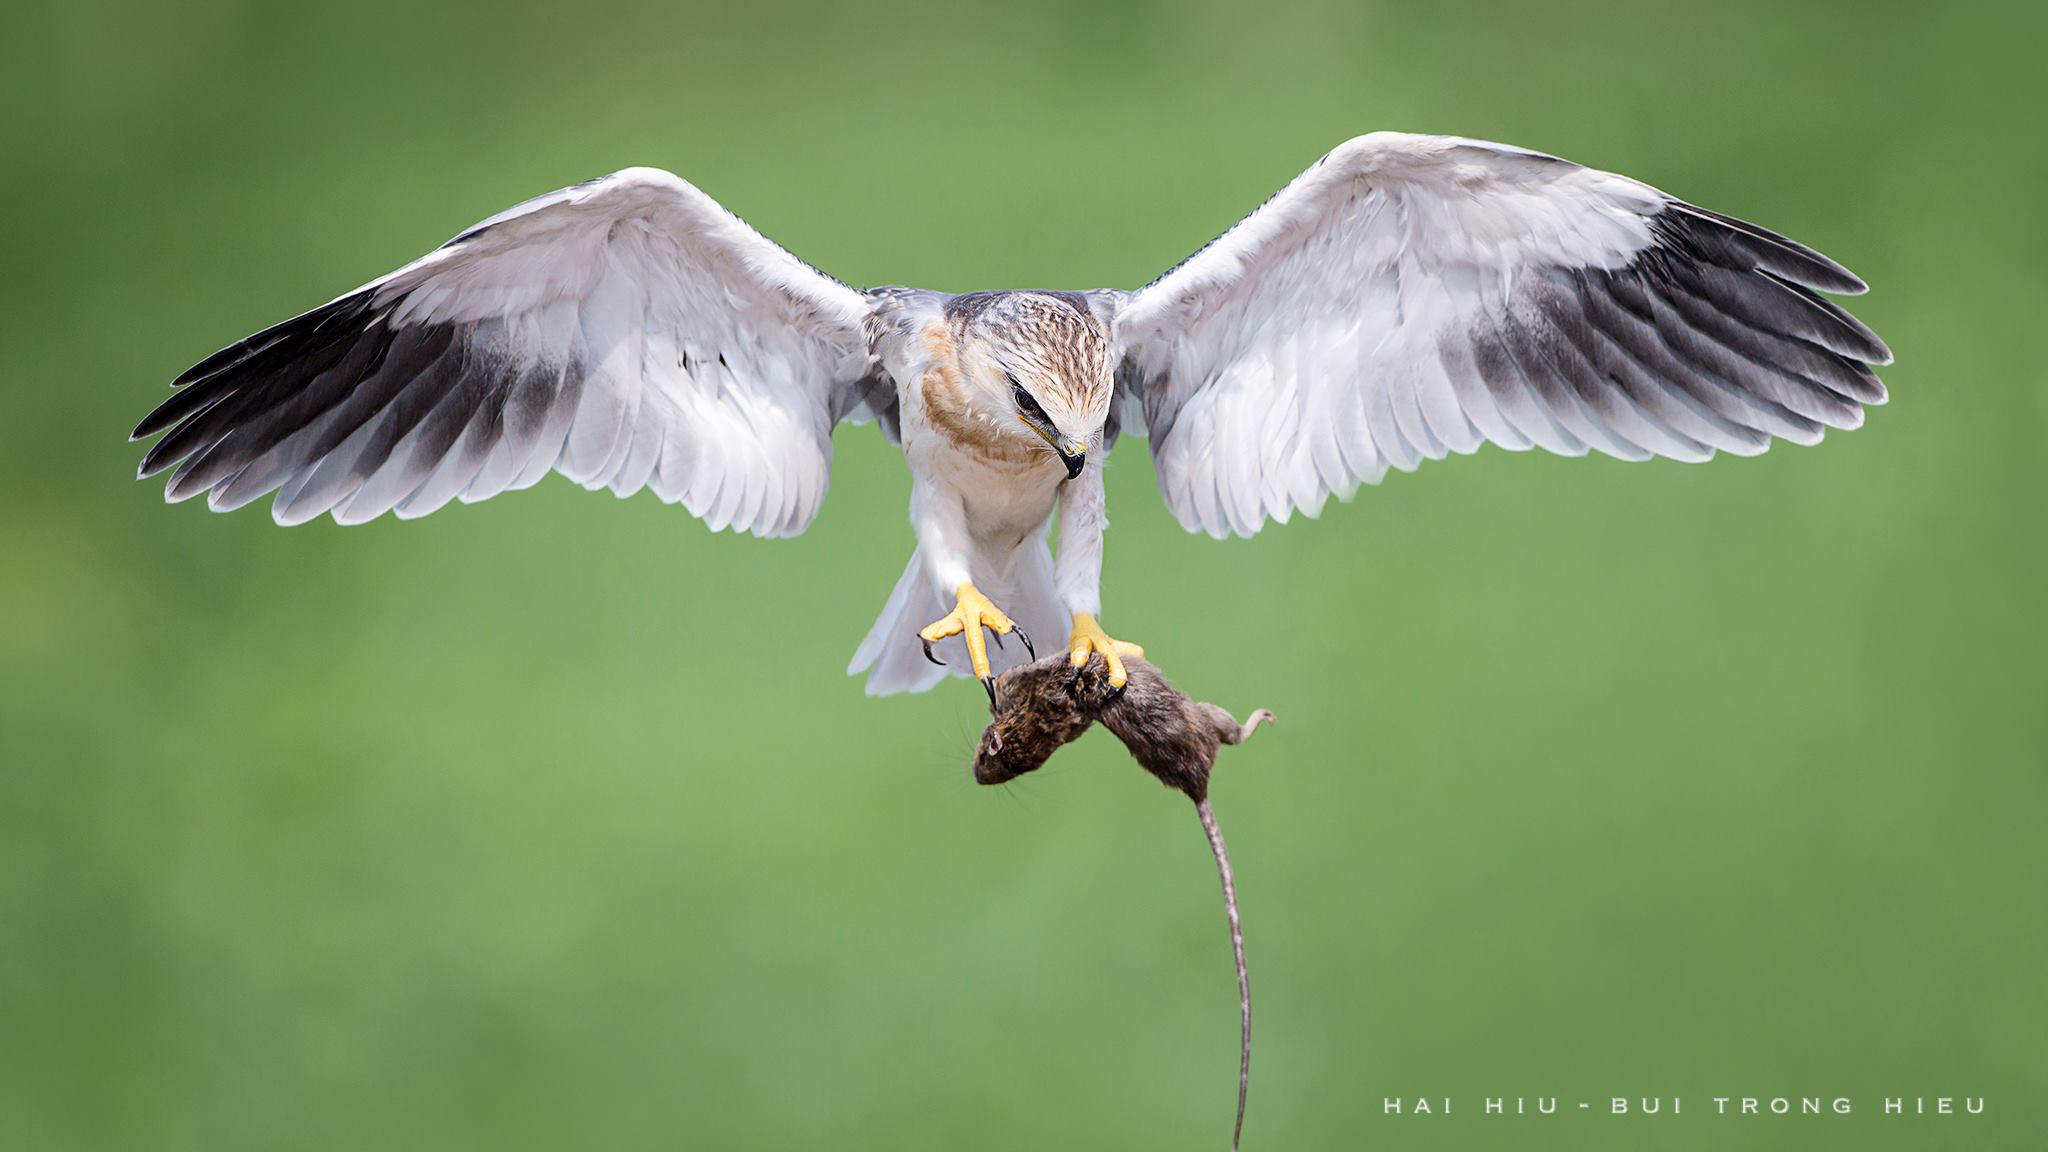 Mời các bạn xem những bức ảnh chim muông tuyệt đẹp được chụp bởi nhiếp ảnh gia Việt Nam